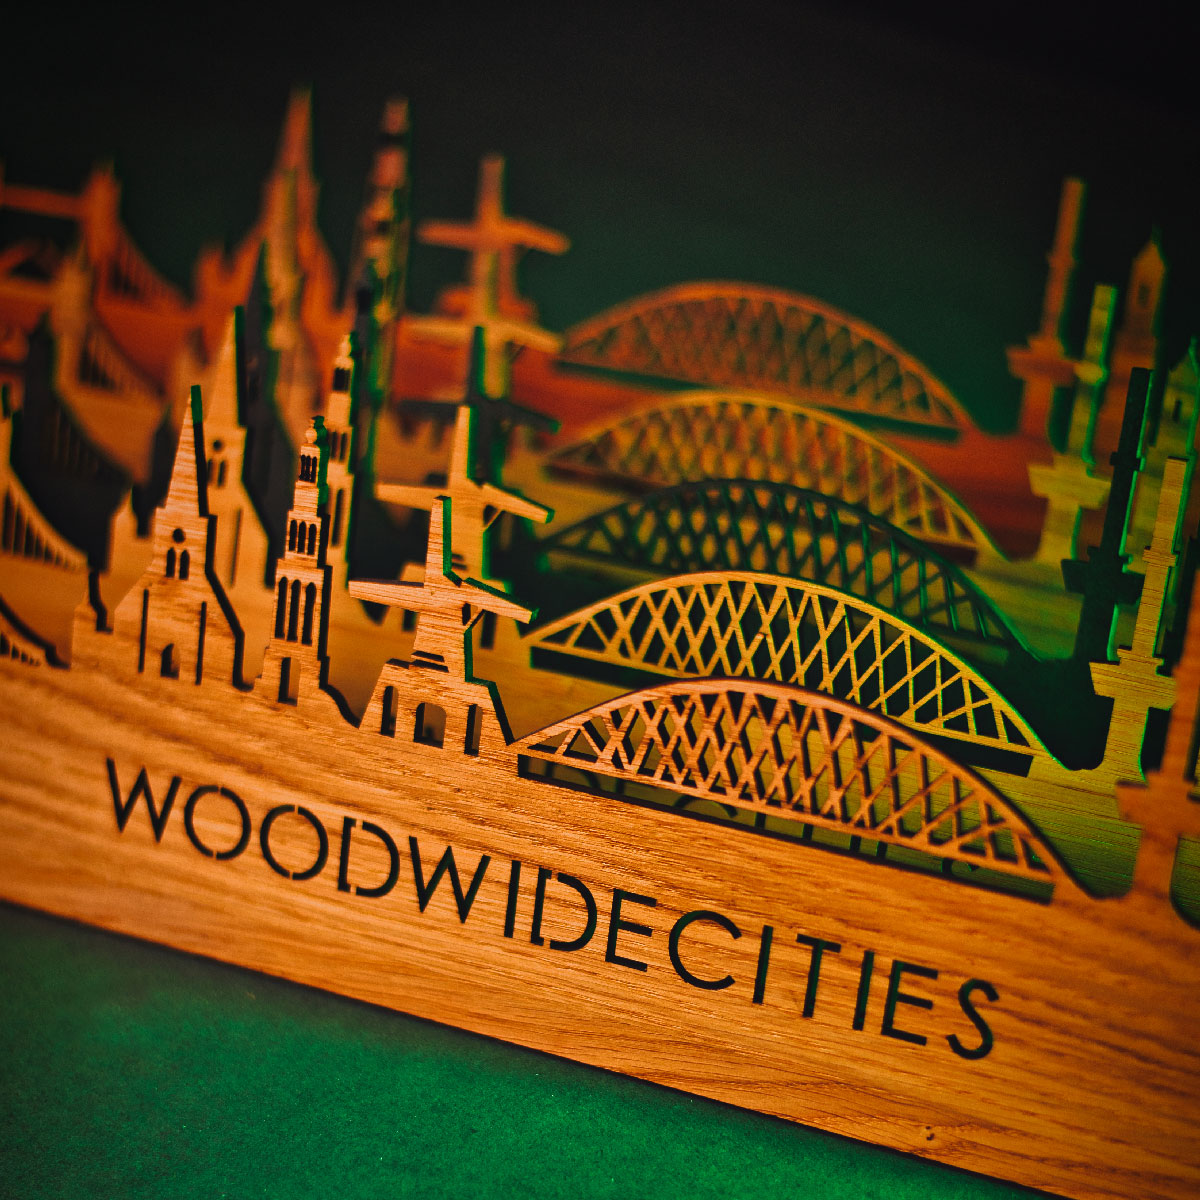 Skyline Klok Wijk bij Duurstede Black Zwart houten cadeau wanddecoratie relatiegeschenk van WoodWideCities